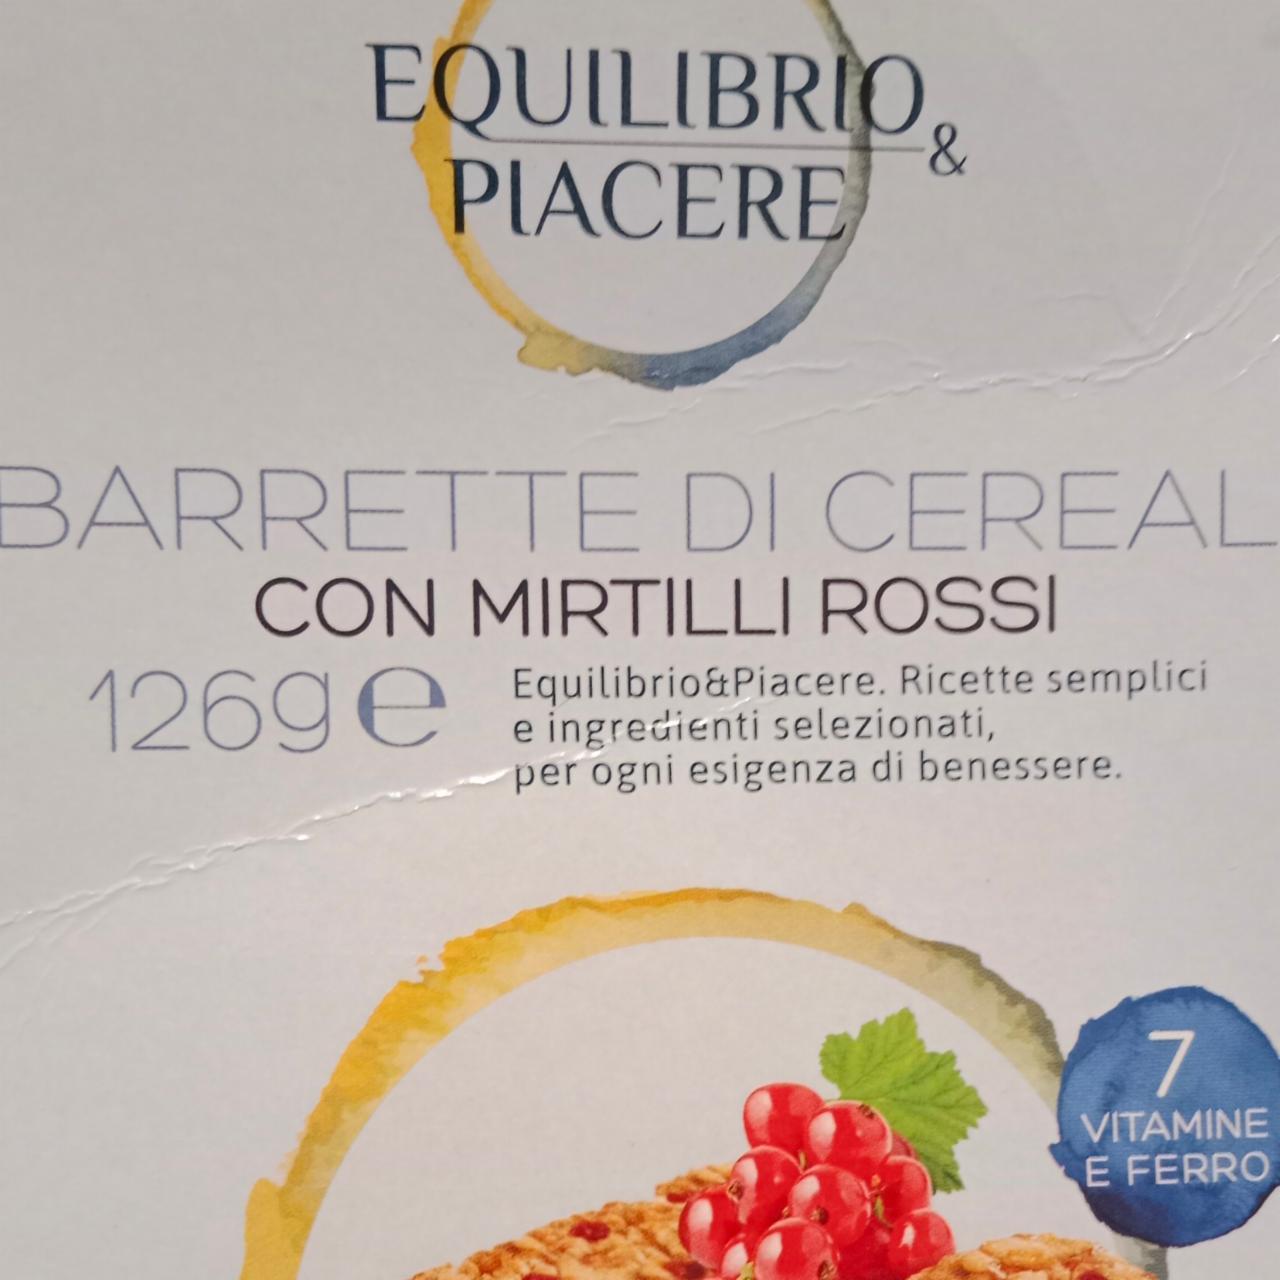 Fotografie - Barrette di Cereali con Mirtilli Rossi Equilibrio & Piacere